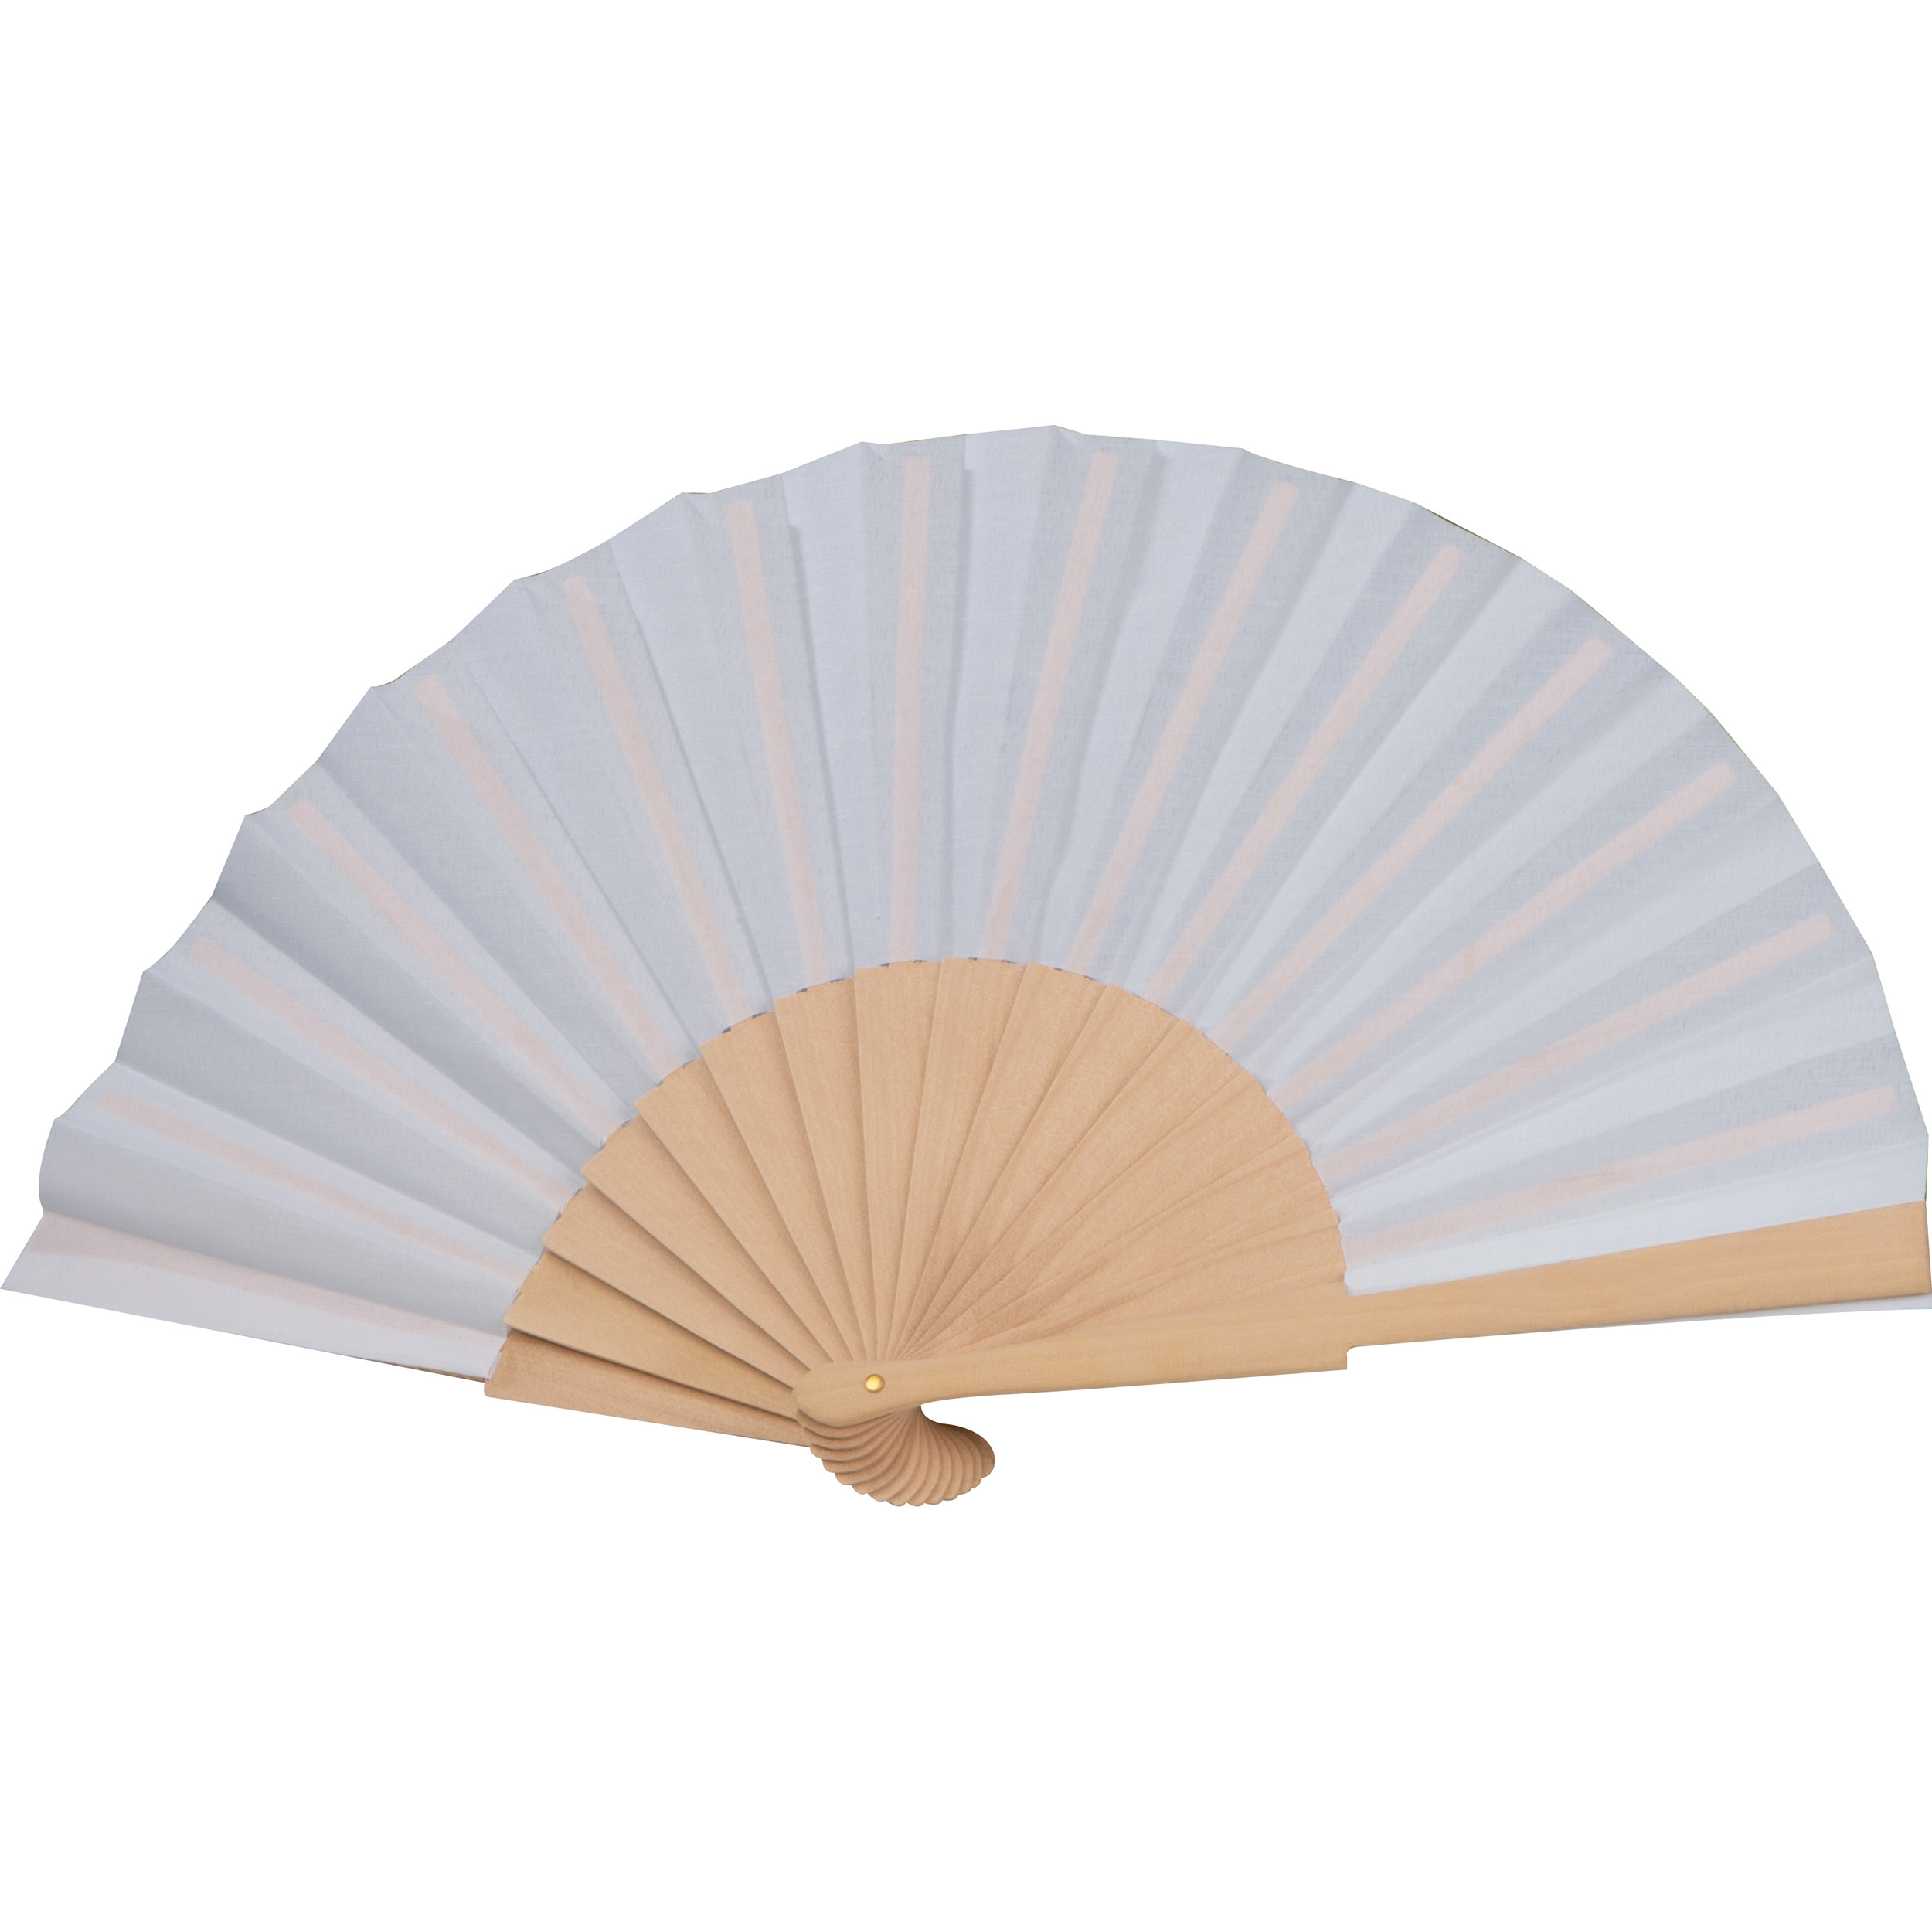 Paper hand fan